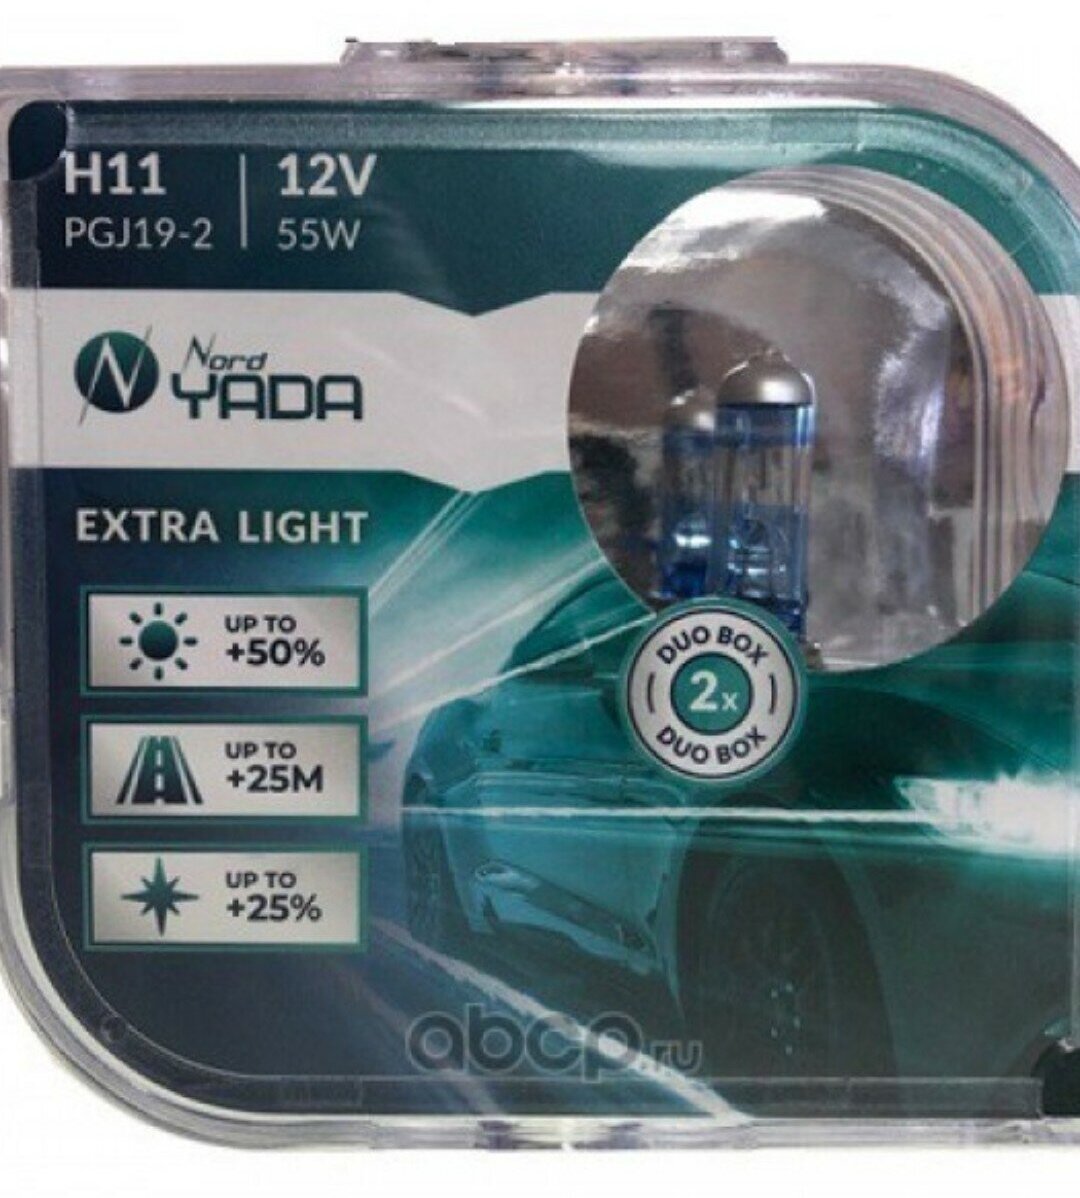 Лампа галогенная Nord YADA H11 12V 55W EXTRA LIGHT +50 % Plastic case - 2шт